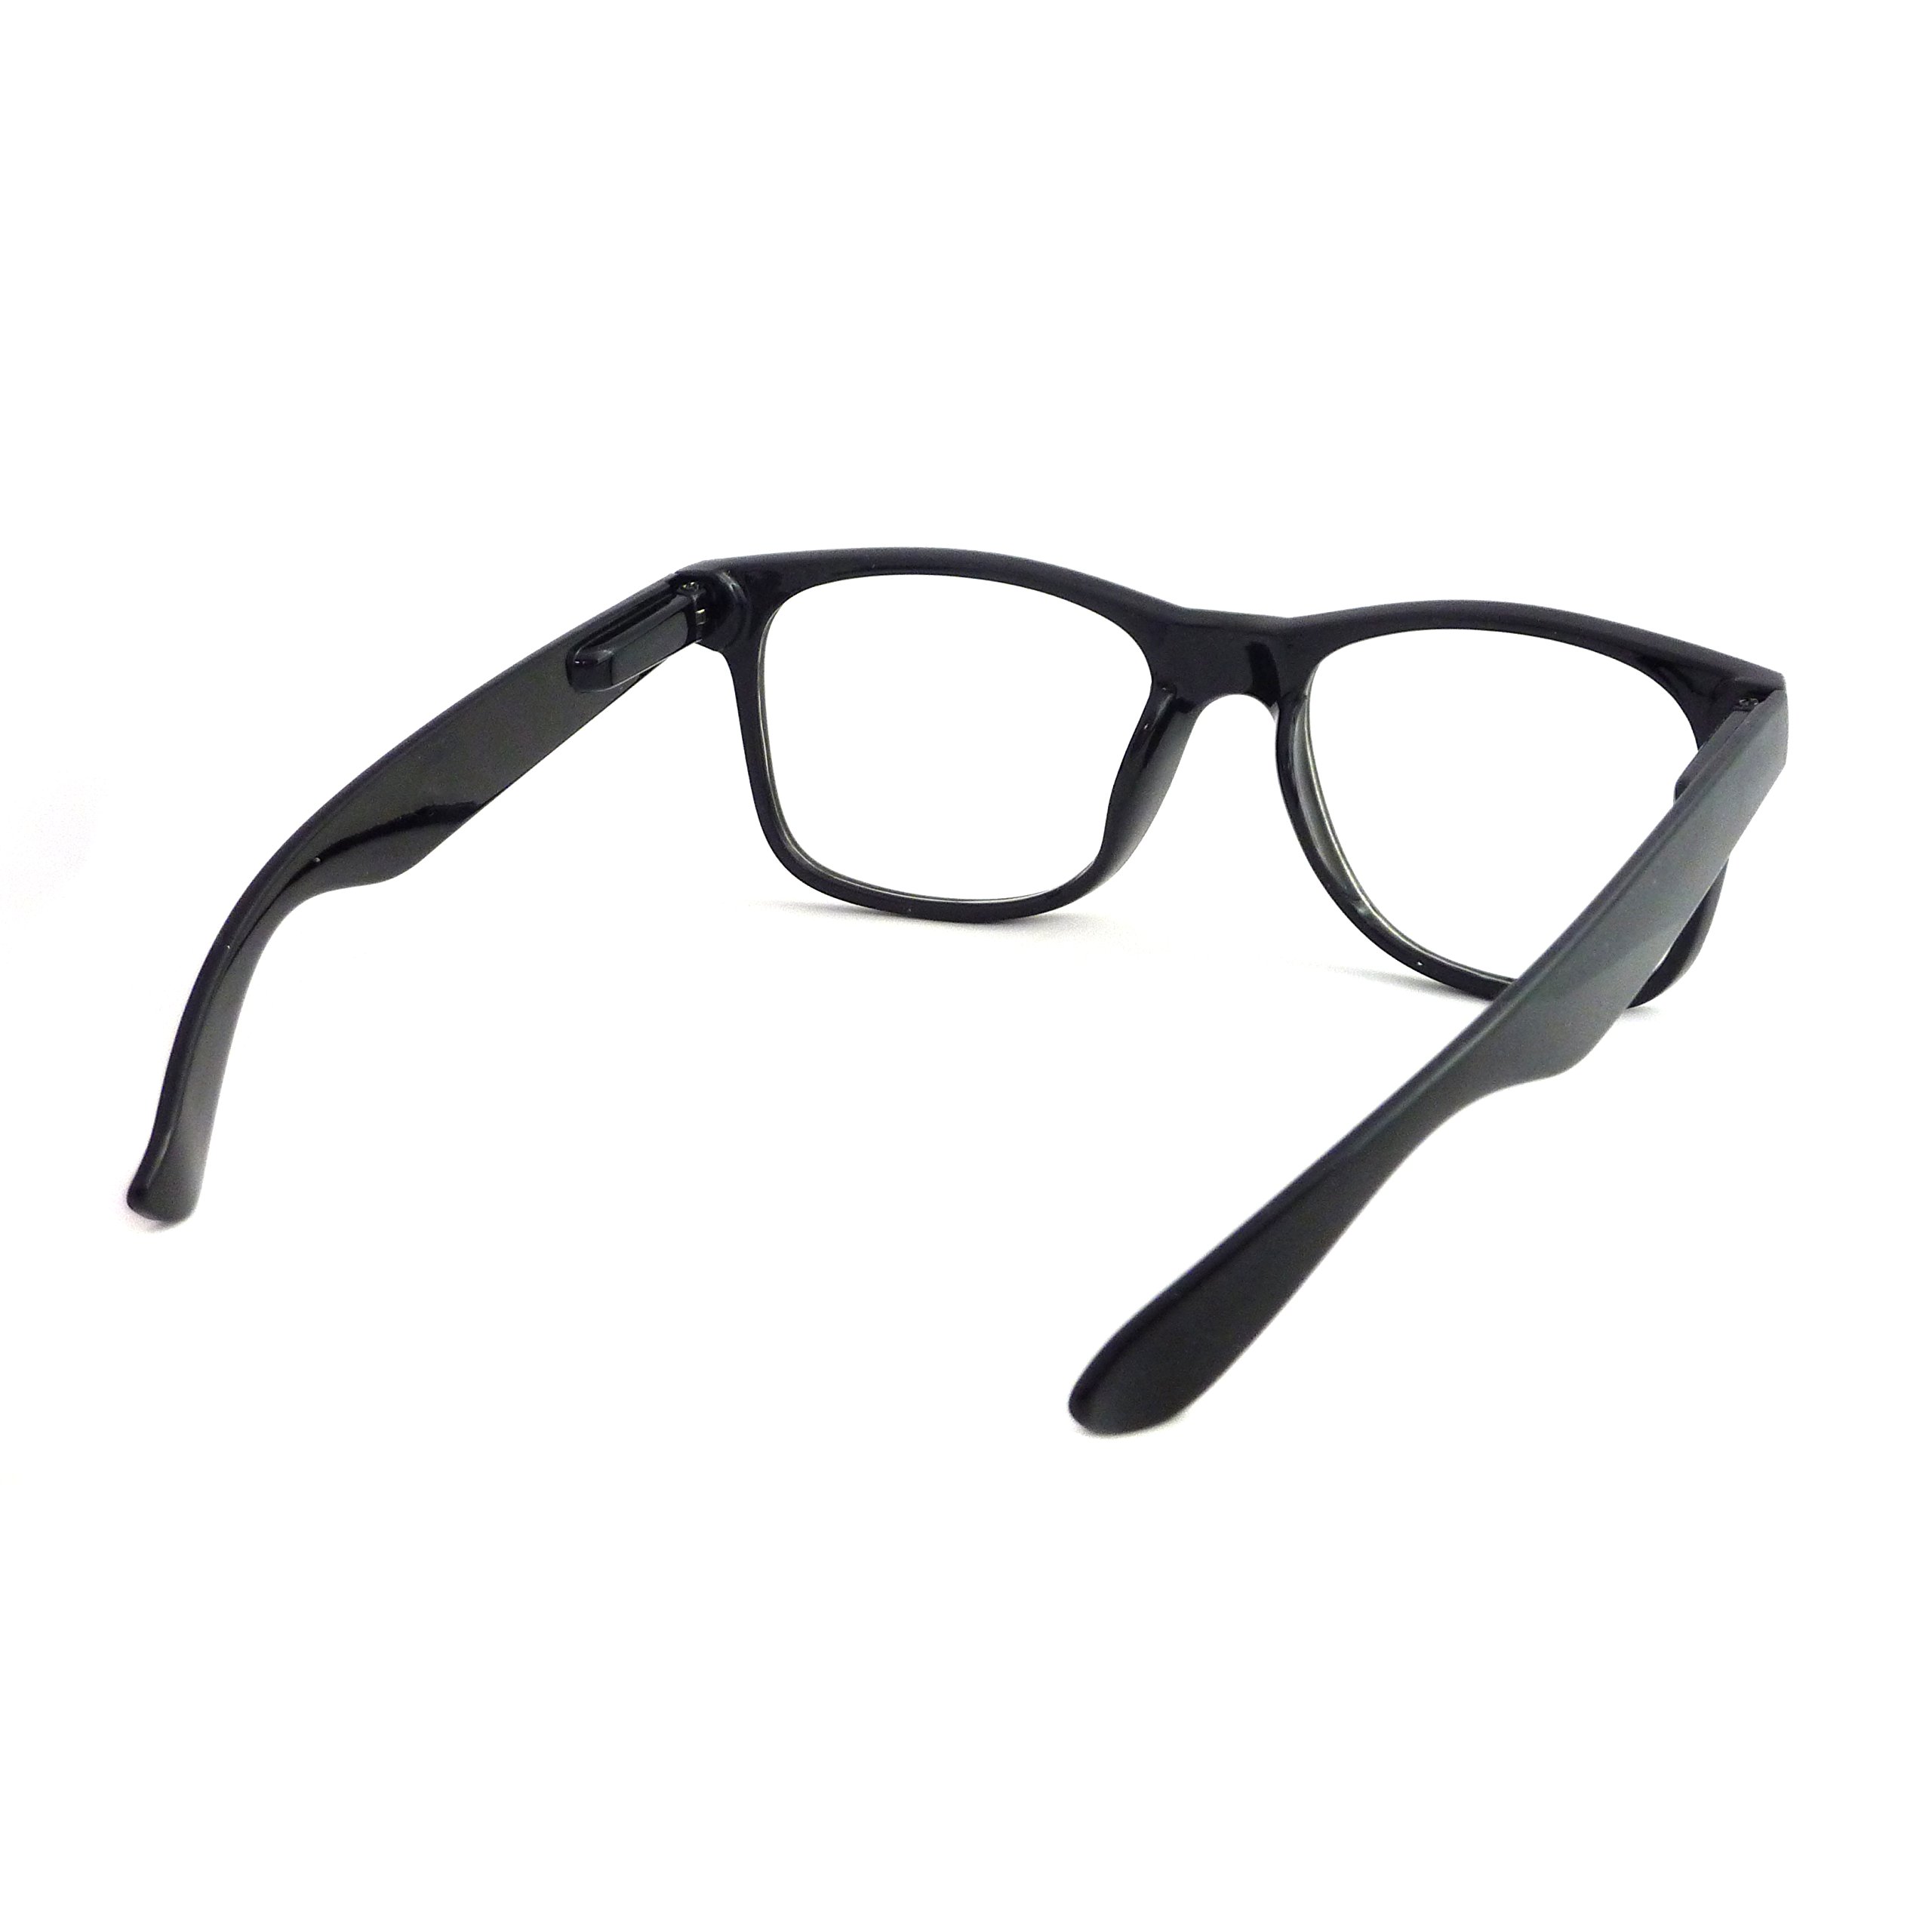 Retro Nerd Geek Oversized Black Framed Spring Temple Clear Lens Eye Glasses